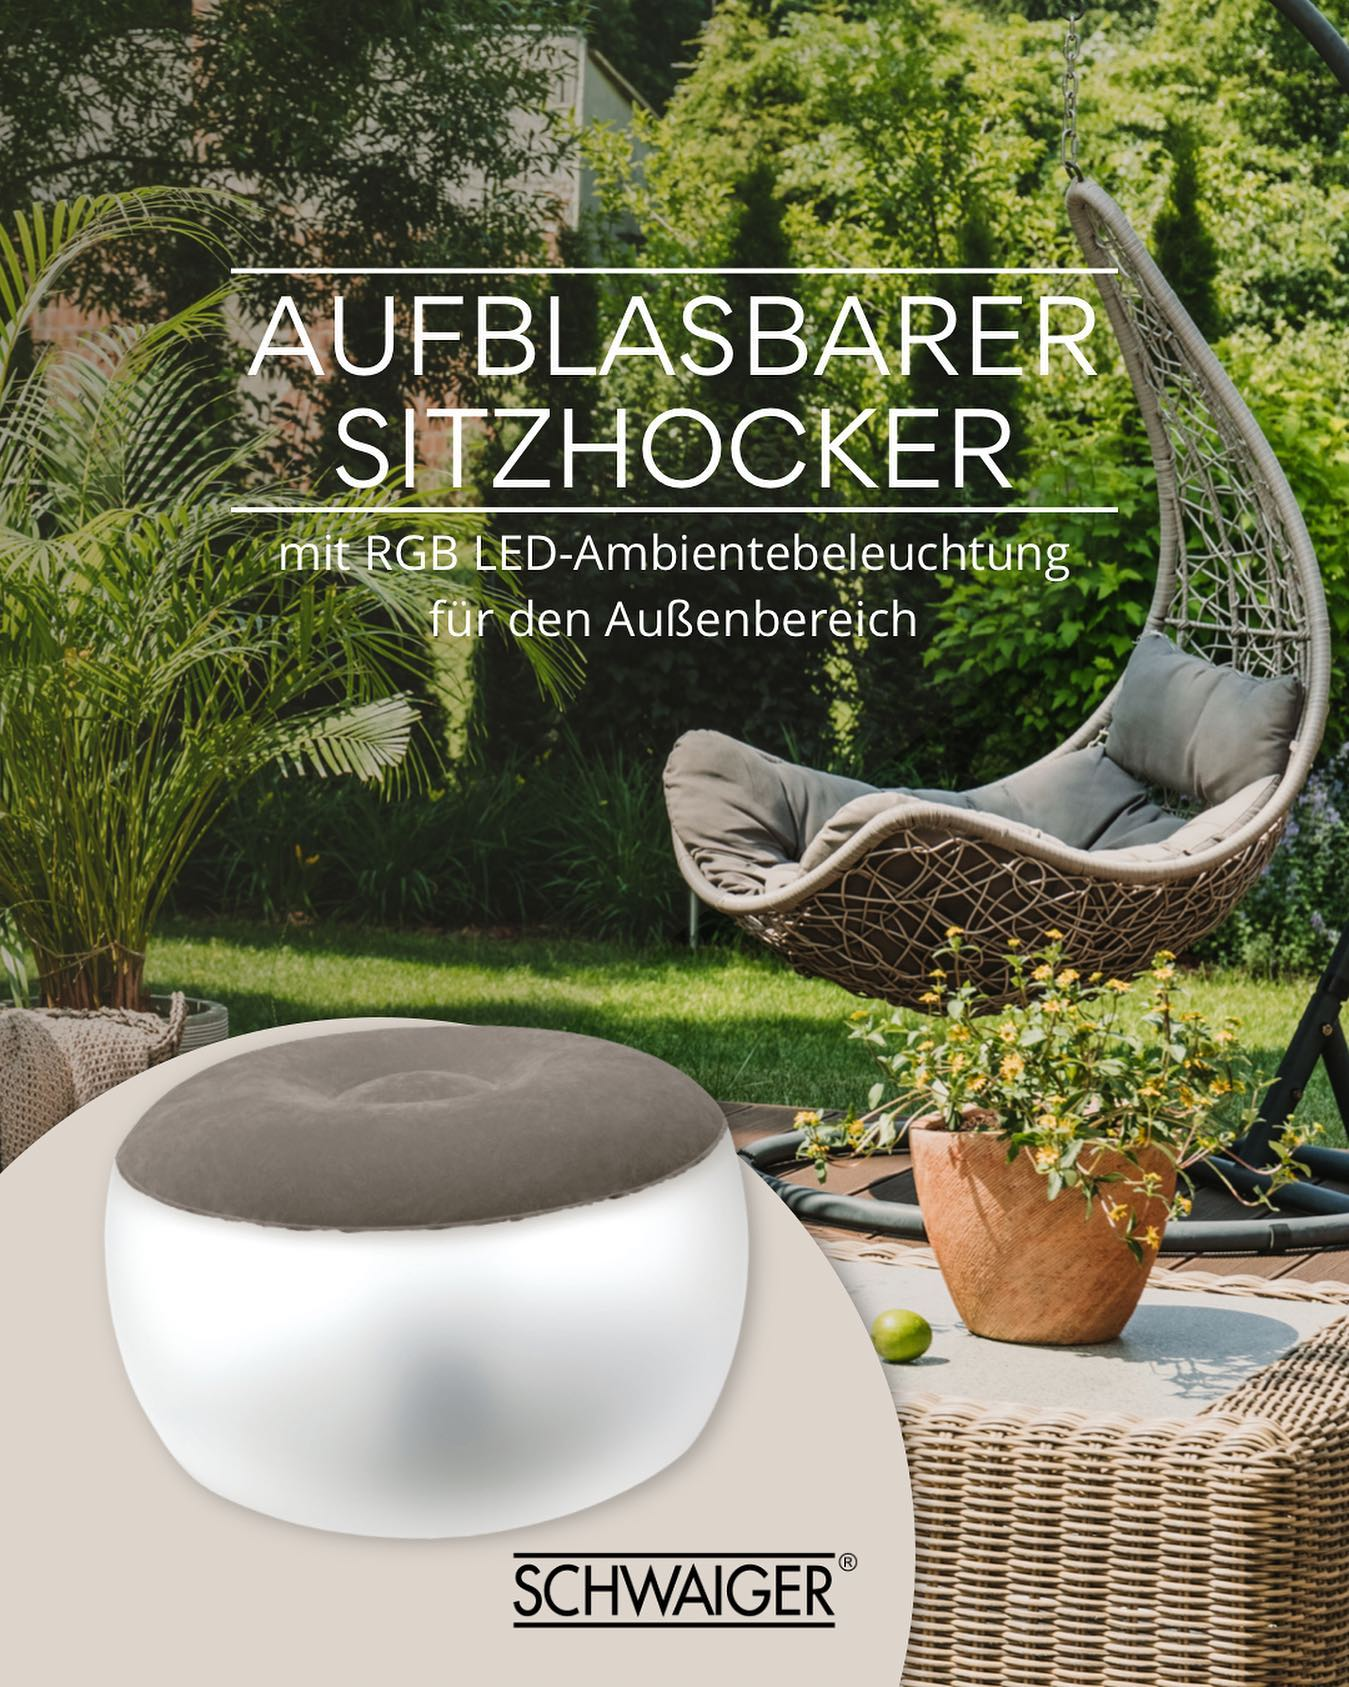 SCHWAIGER -660180- Outdoor Sitzhocker, transparent/grau